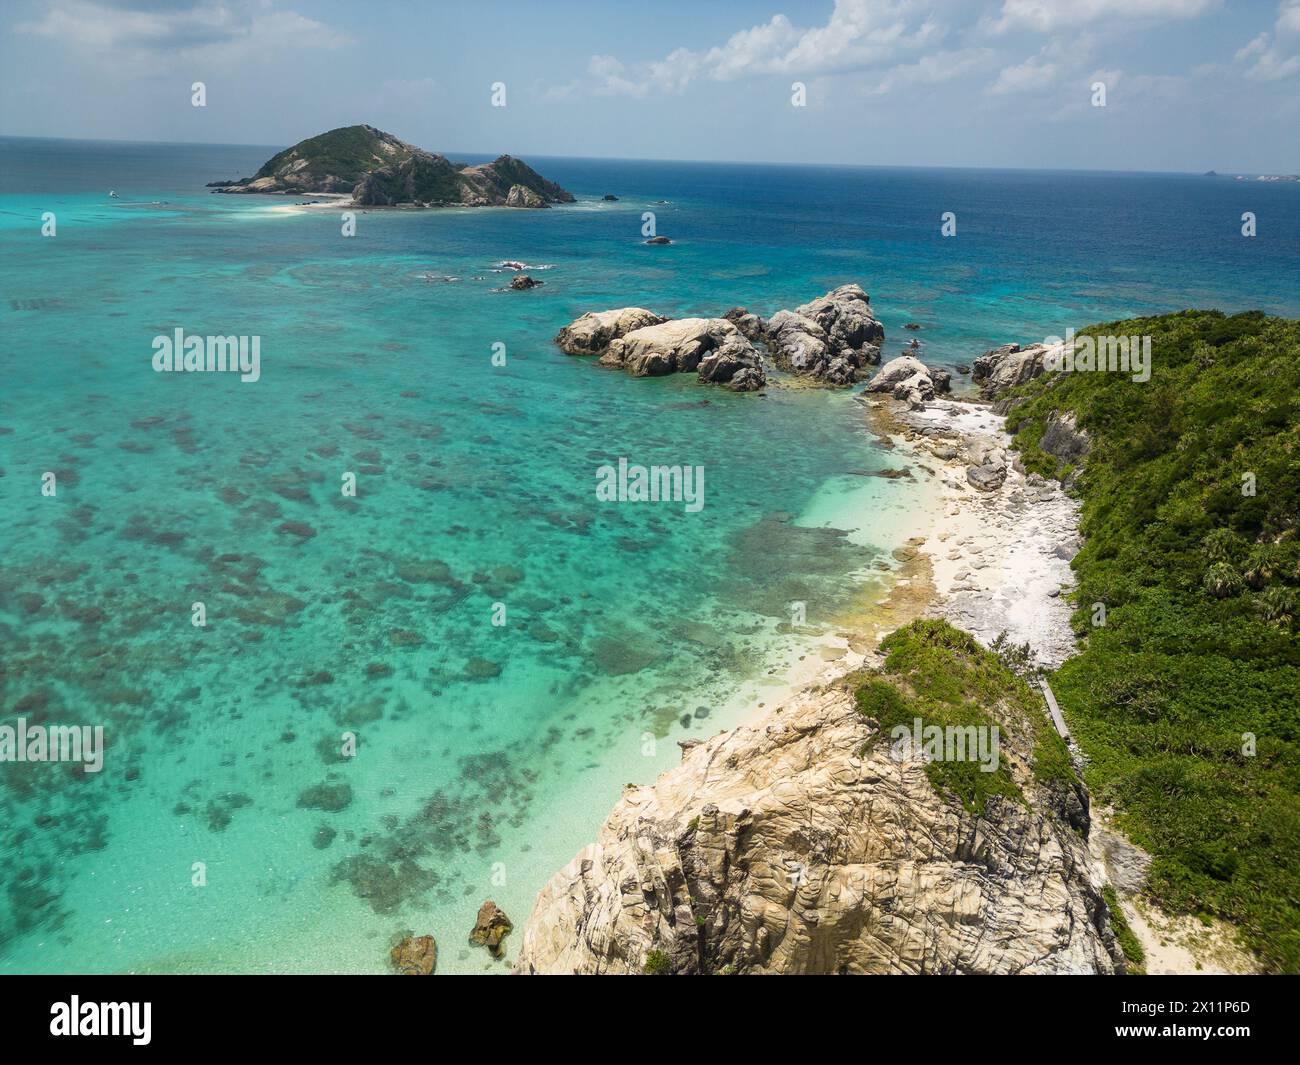 Okinawa, Japan: Luftaufnahme des Aharen Strandes auf der tropischen Insel Tokashiki in Okinawa im Pazifischen Ozean. Stockfoto